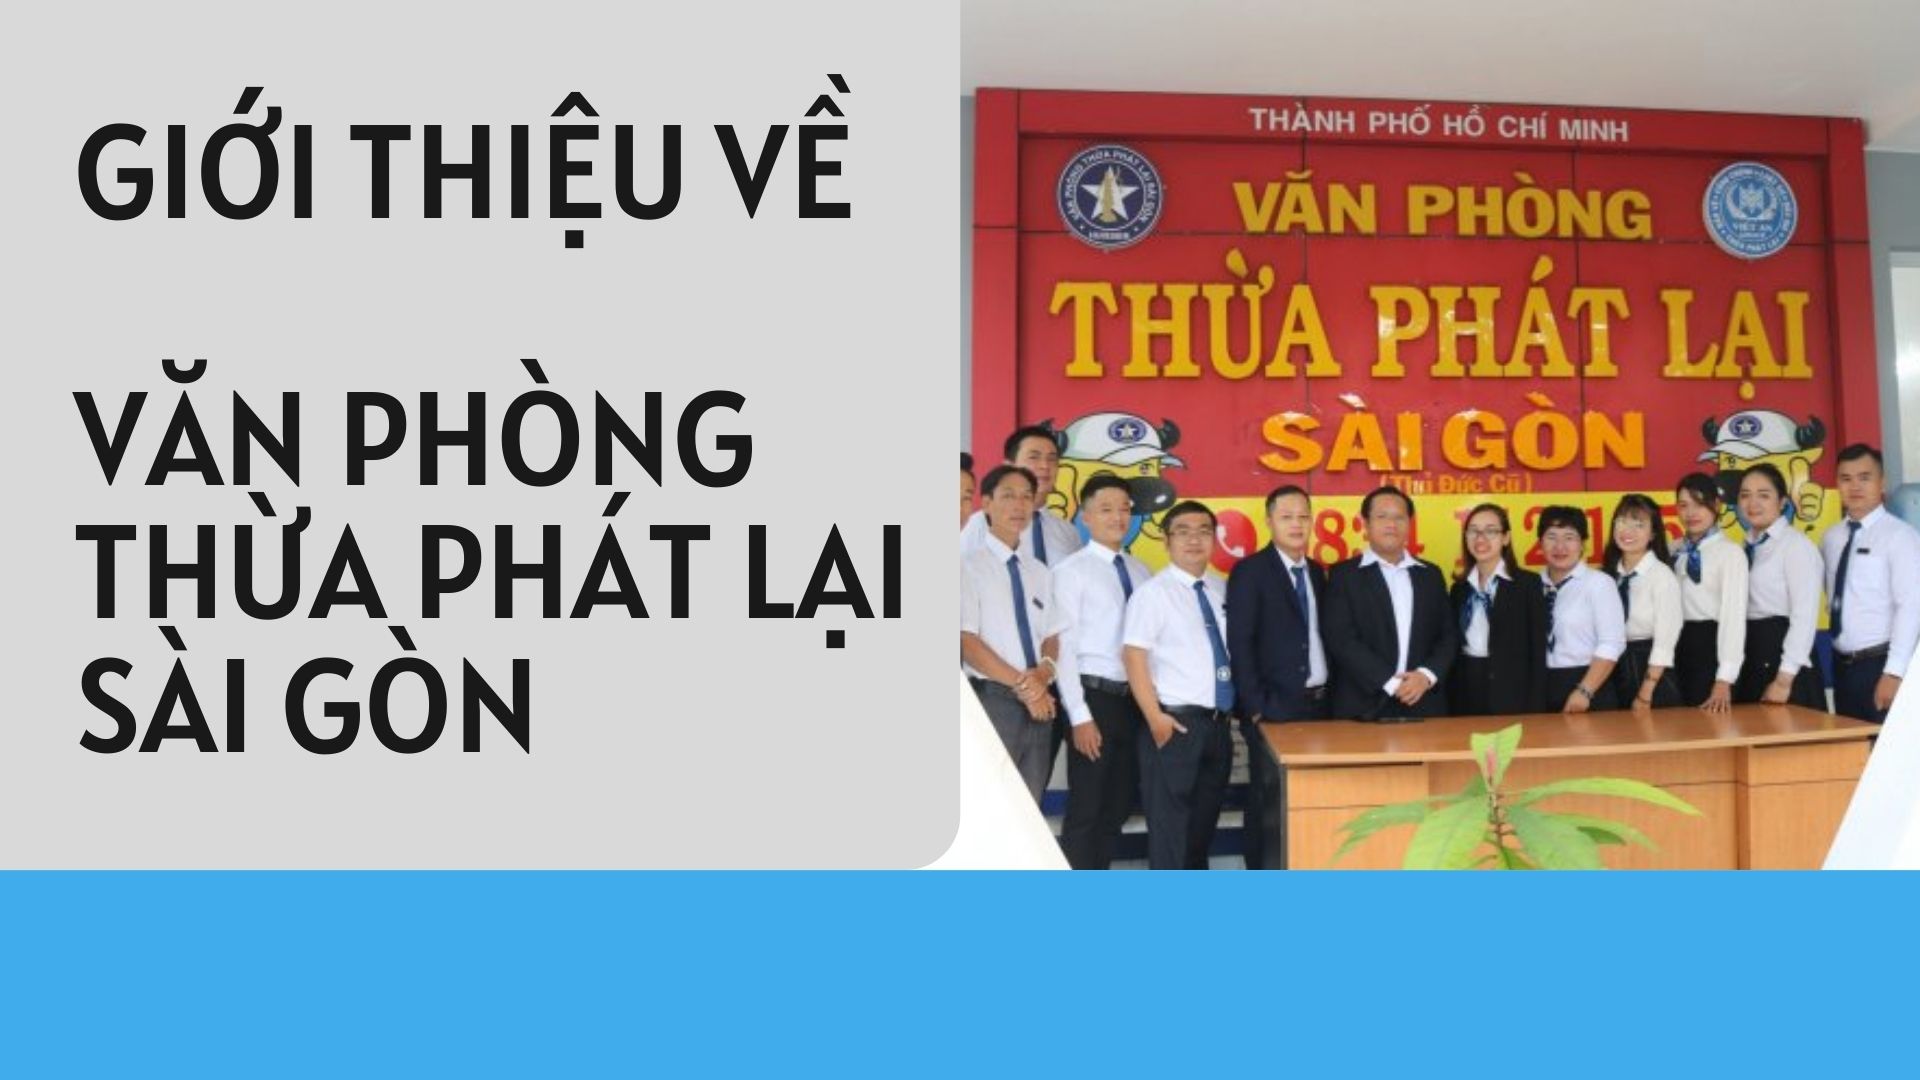 Giới thiệu về Văn phòng Thừa phát lại Sài Gòn tại trụ sở mới